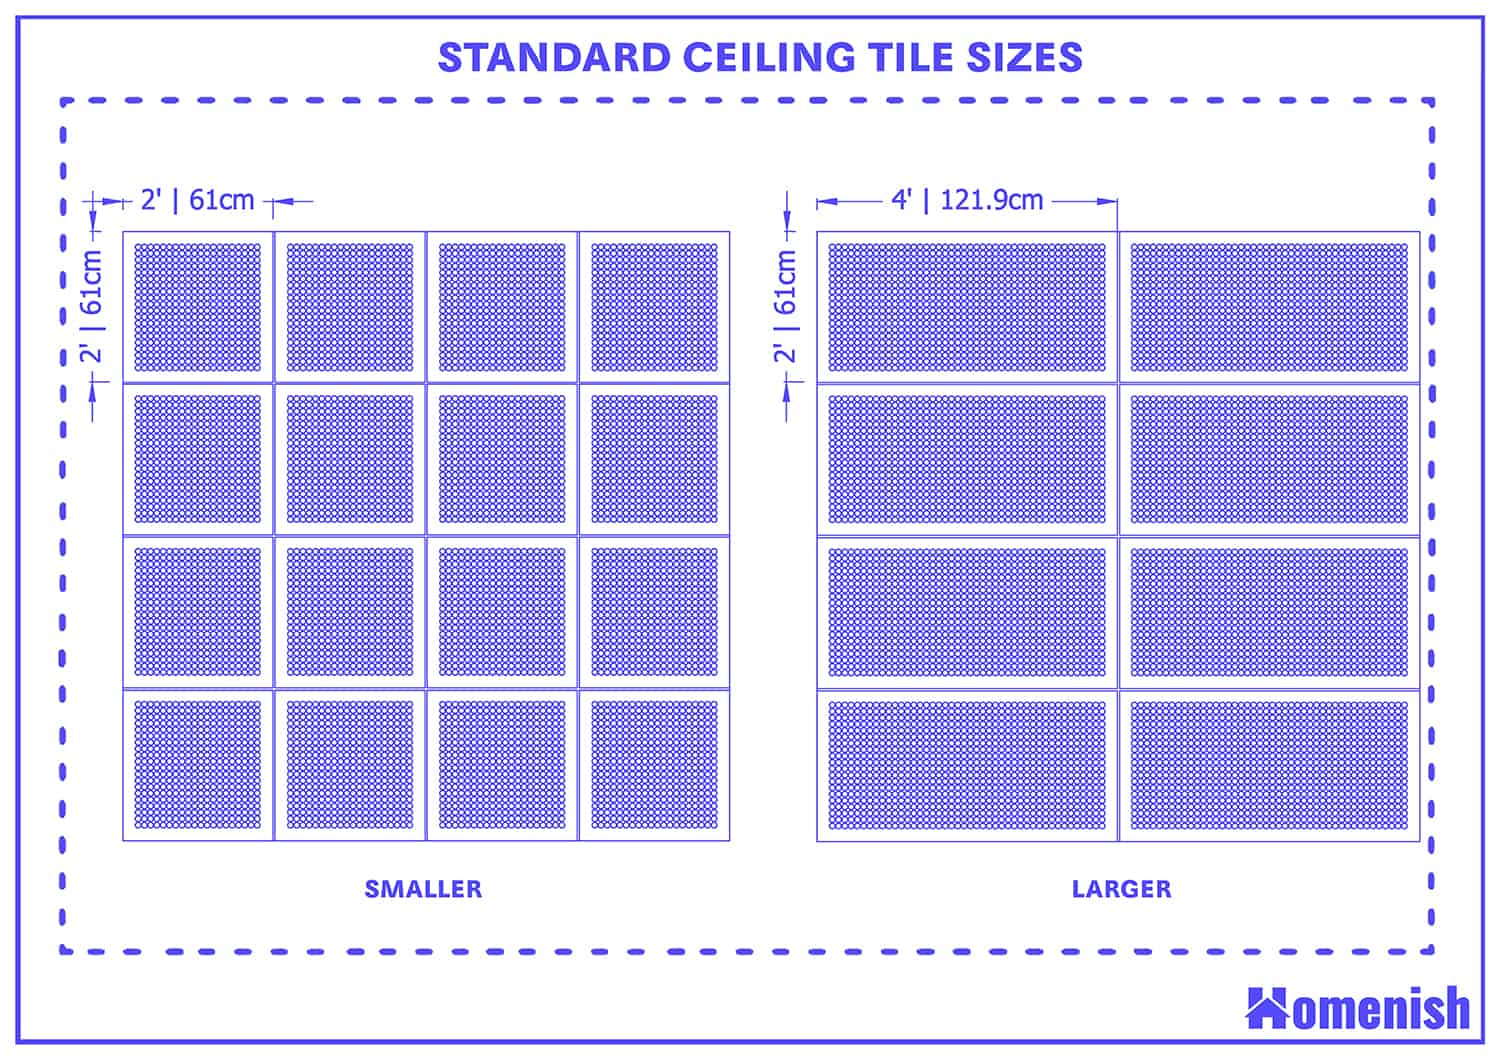 標準天花板瓷磚尺寸